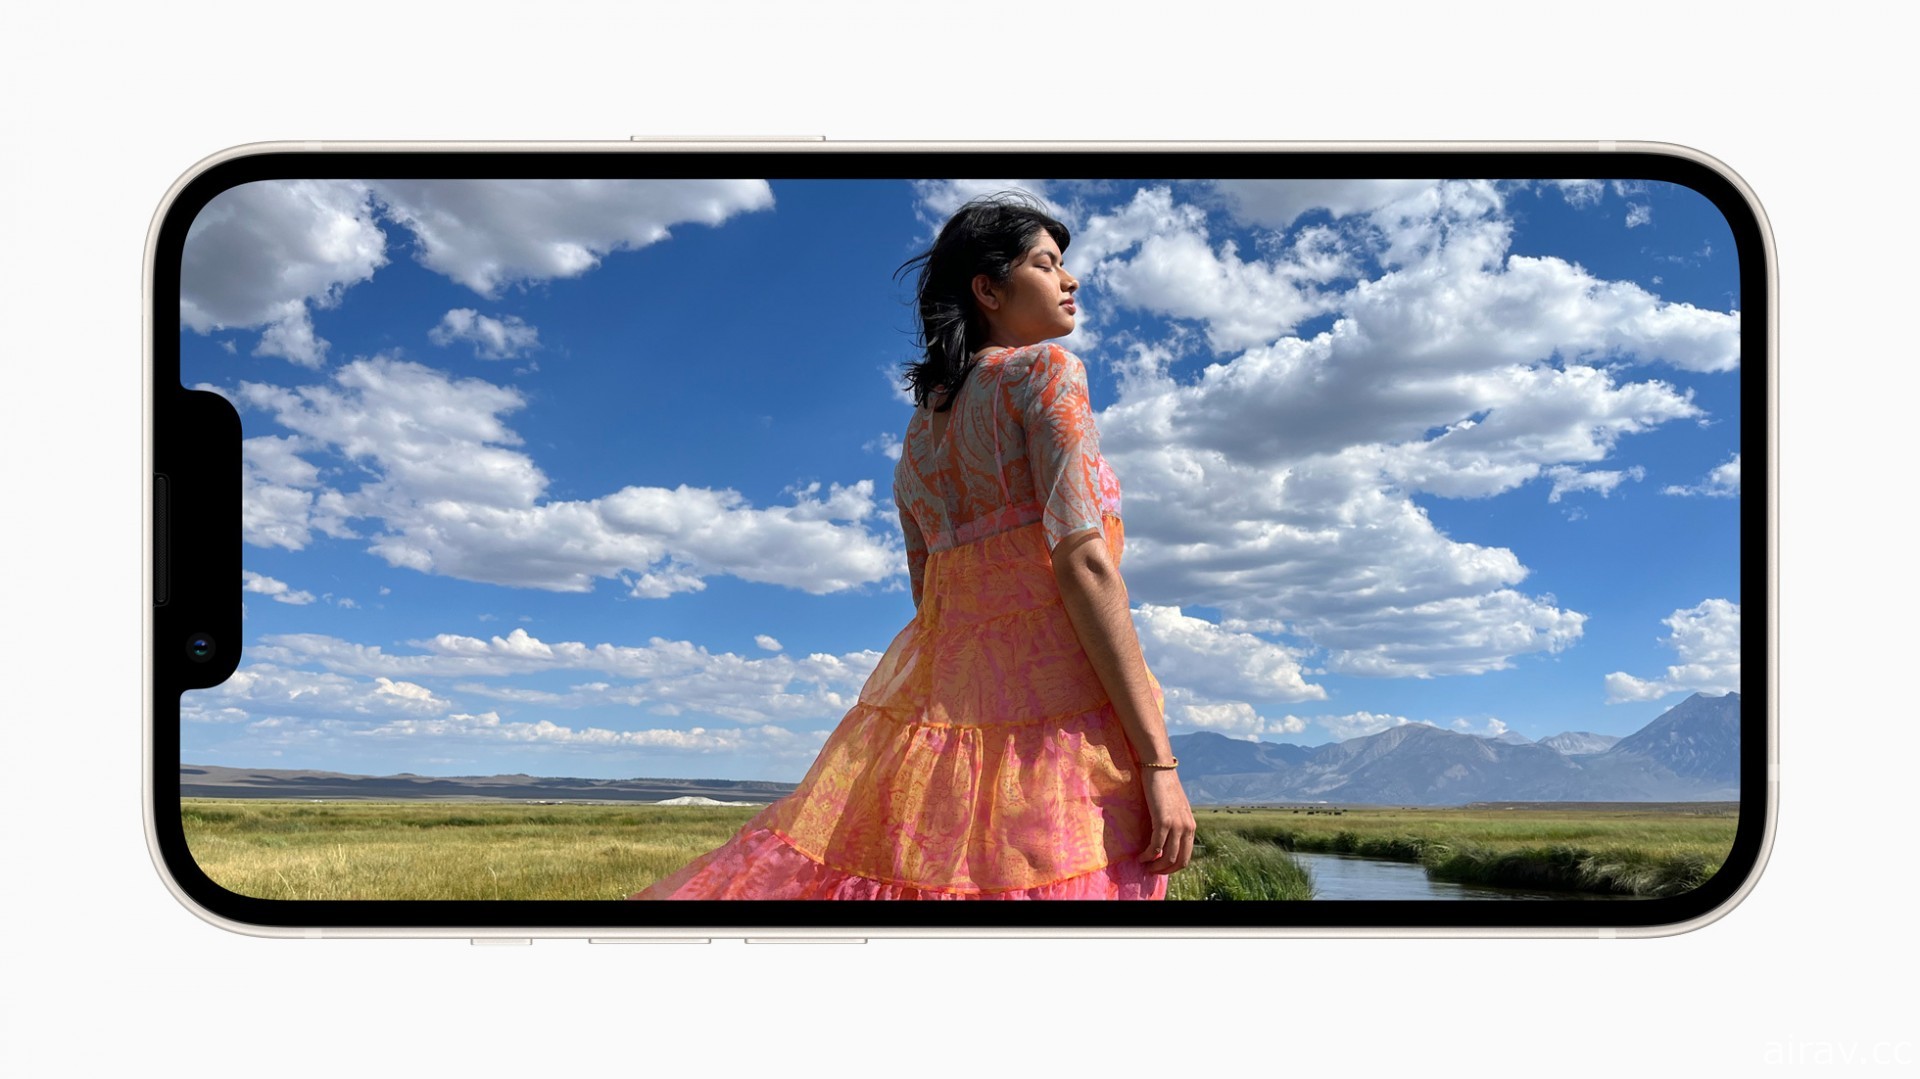 Apple 发表 iPhone 13 与 iPhone 13 mini 强调相机创新功能及优秀续航力